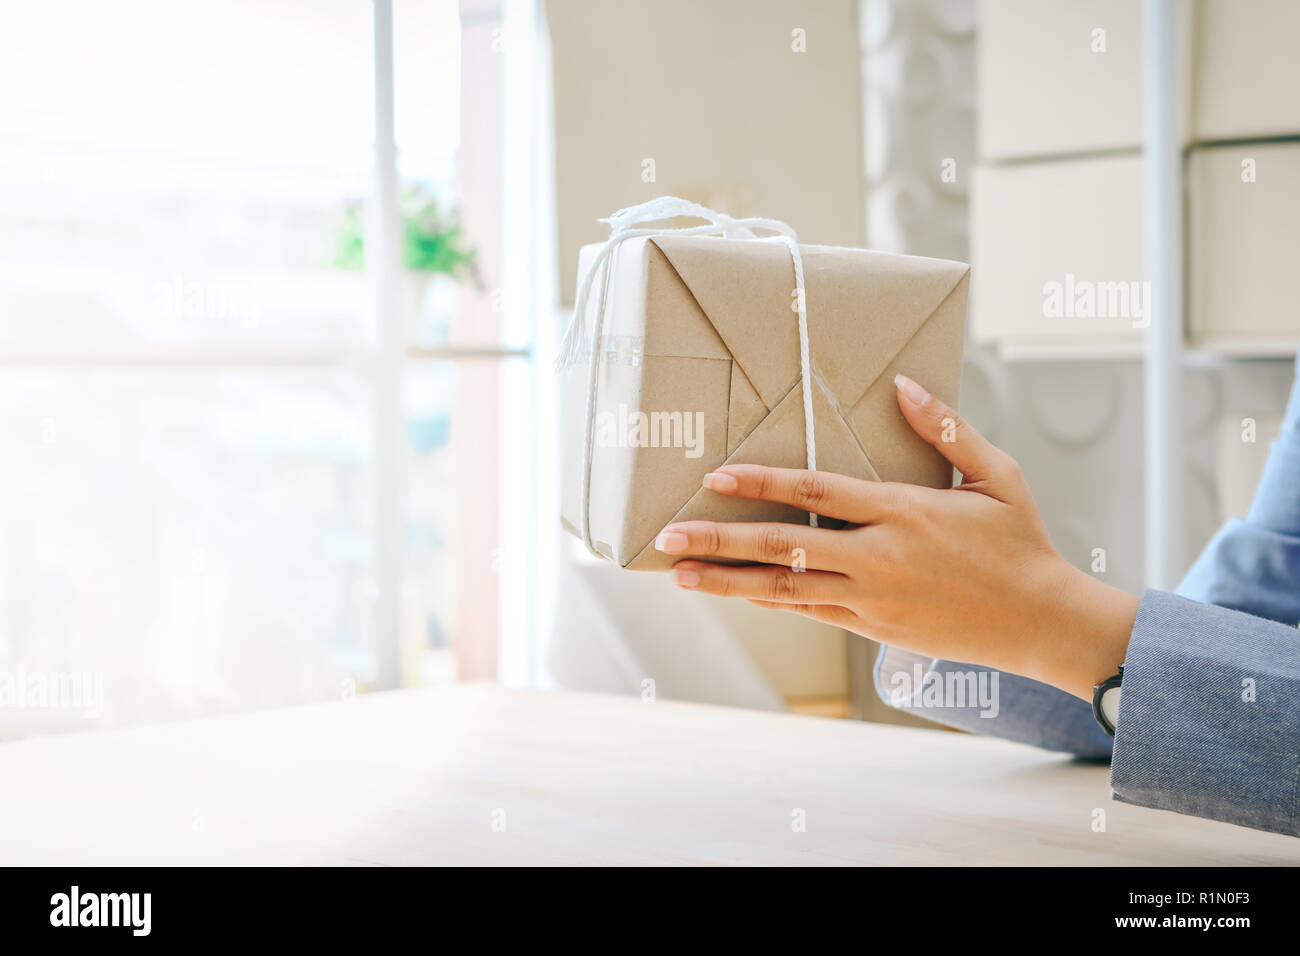 Cerrar manos sosteniendo caja de regalo envuelto con papel kraft Foto de stock